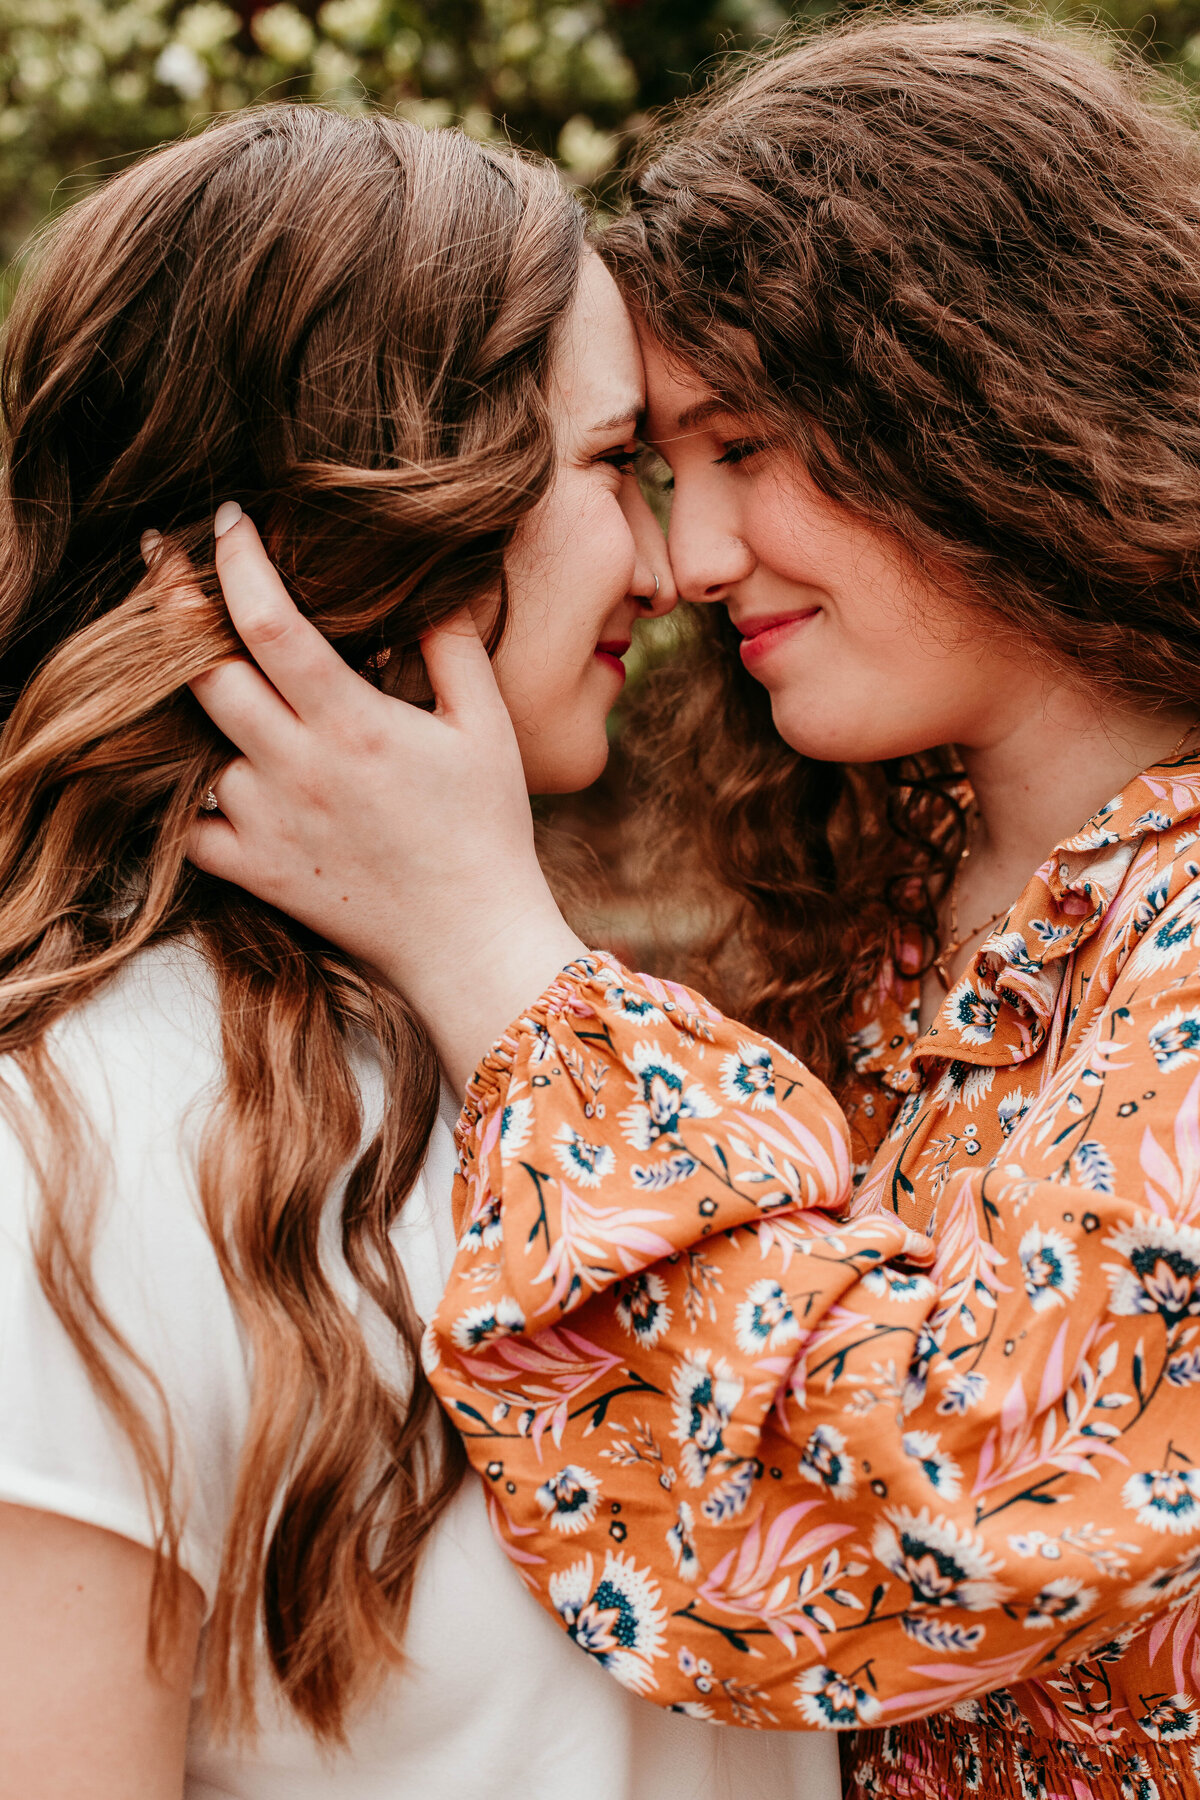 lesbian couple embraces during birmingham engagement session